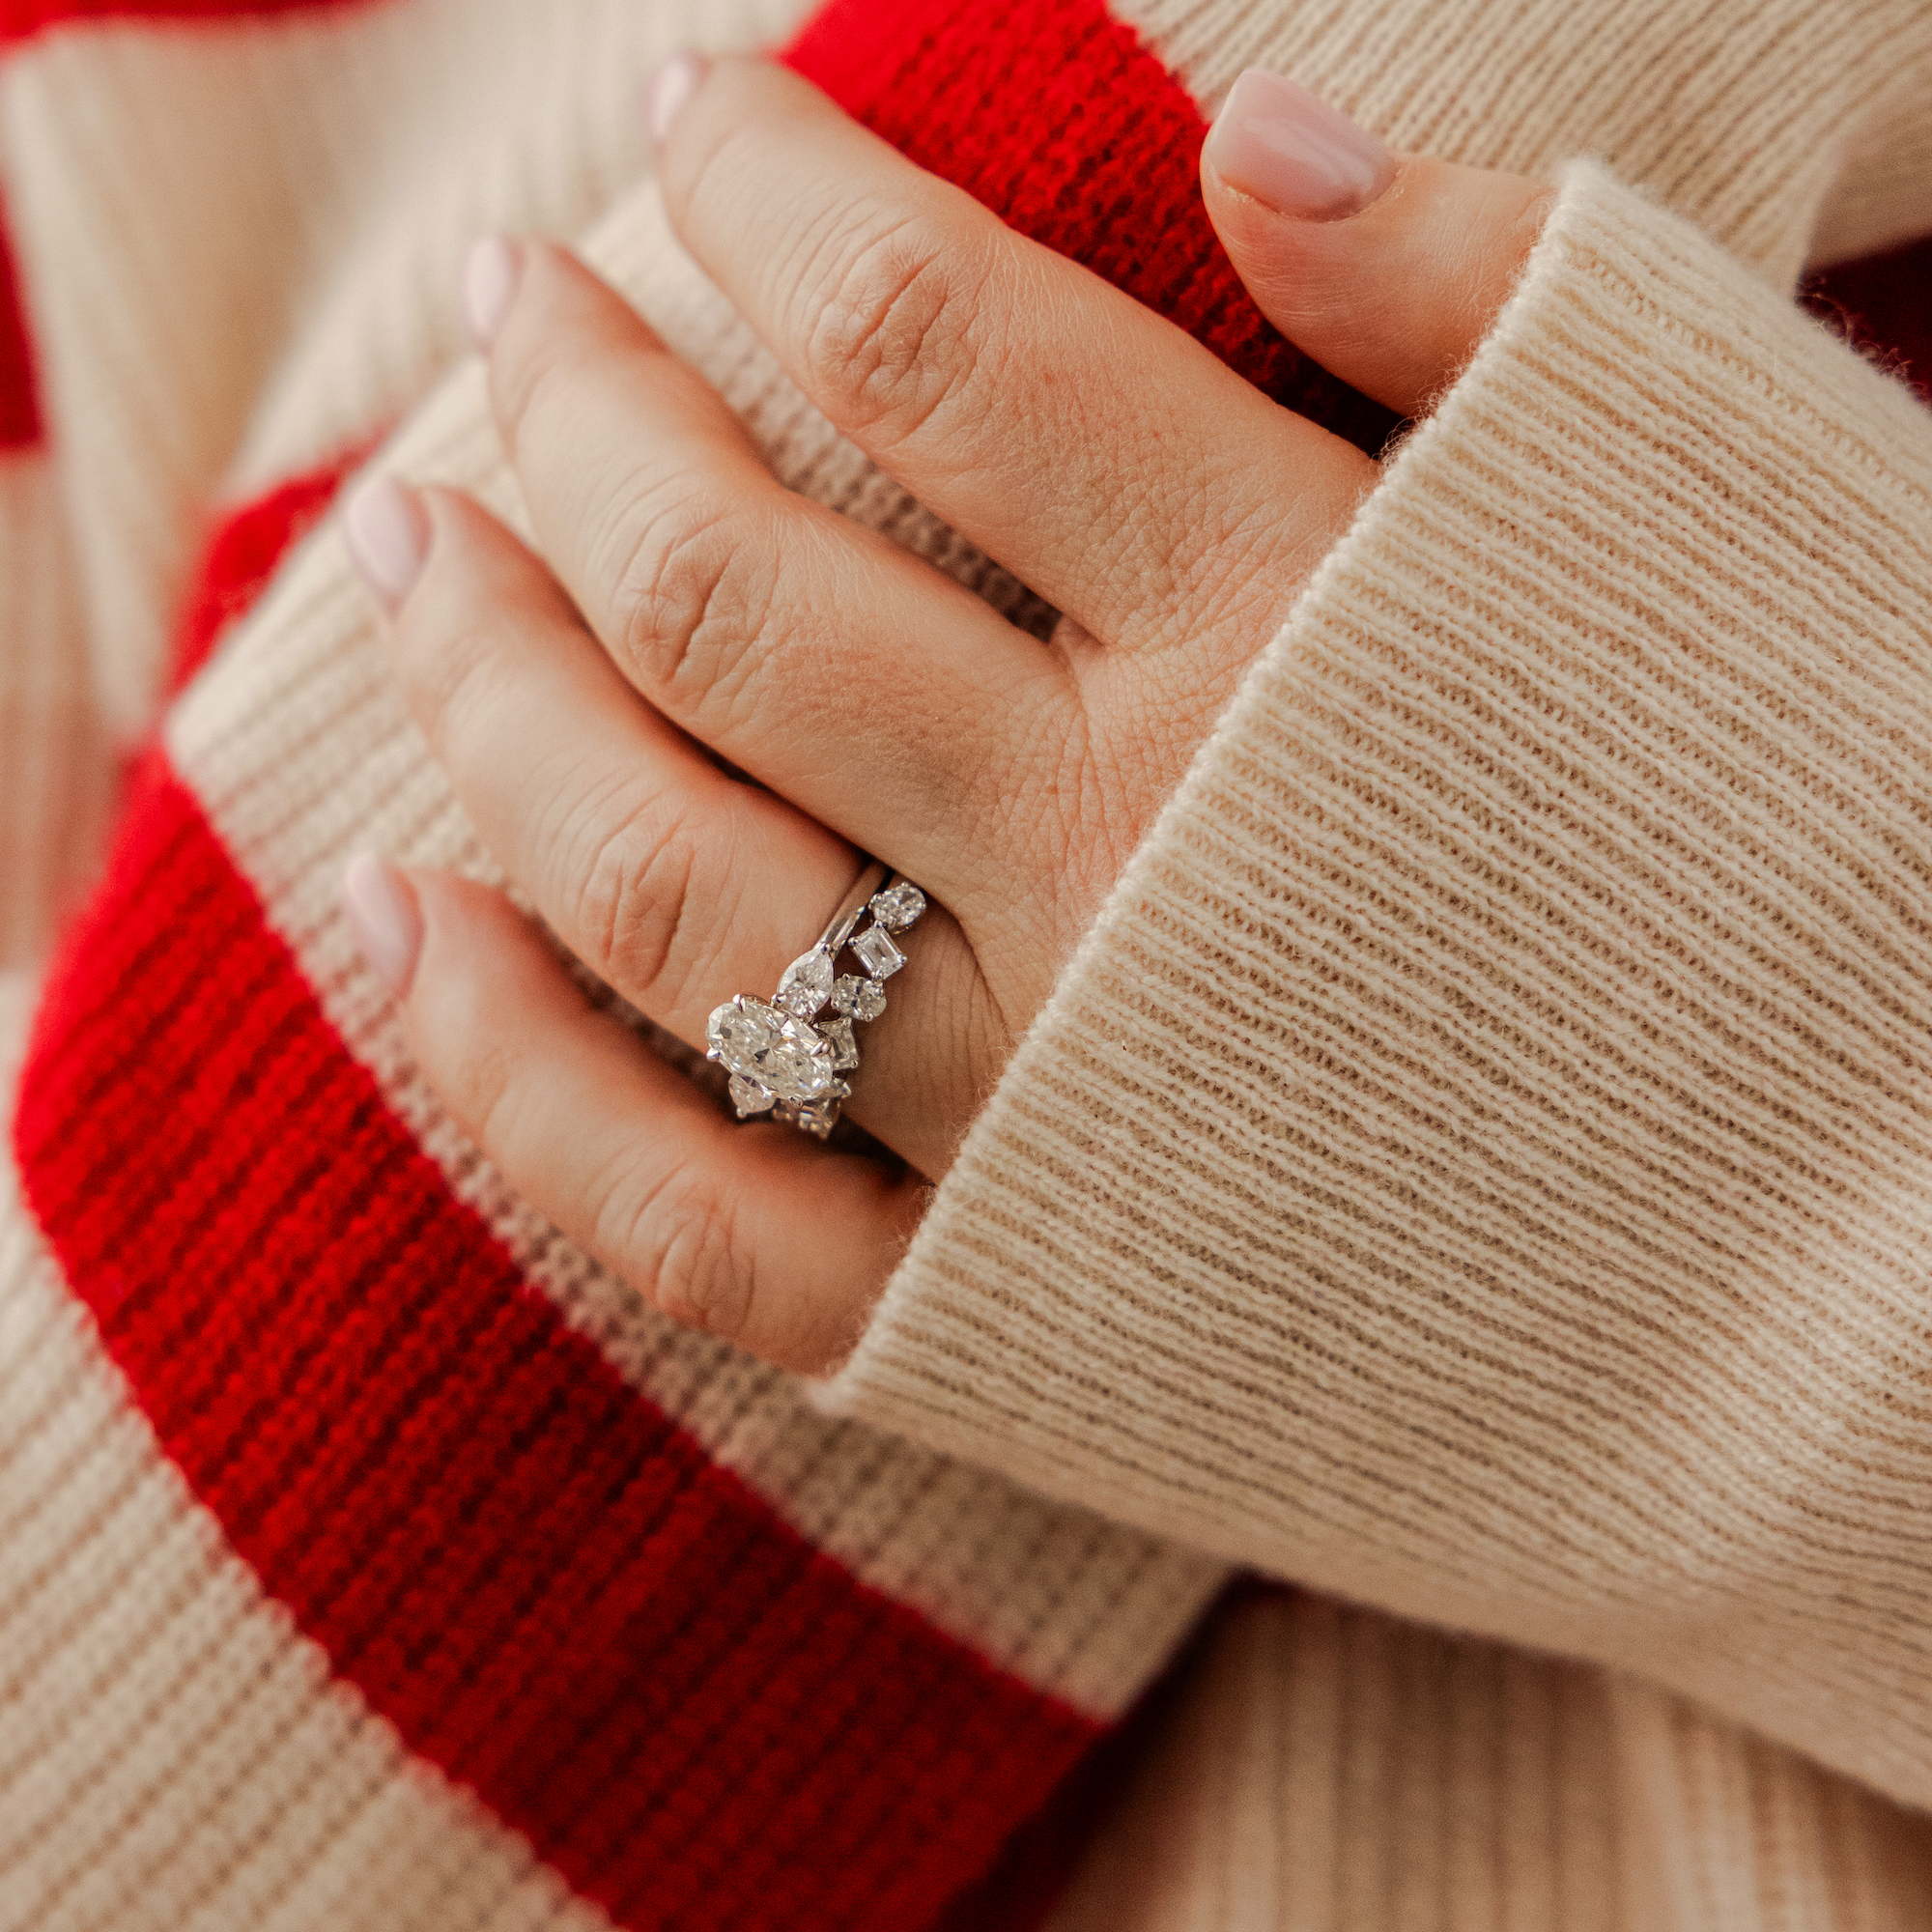 18K White Gold 3 Stone Diamond Engagement Ring | Joseph's Jewelry